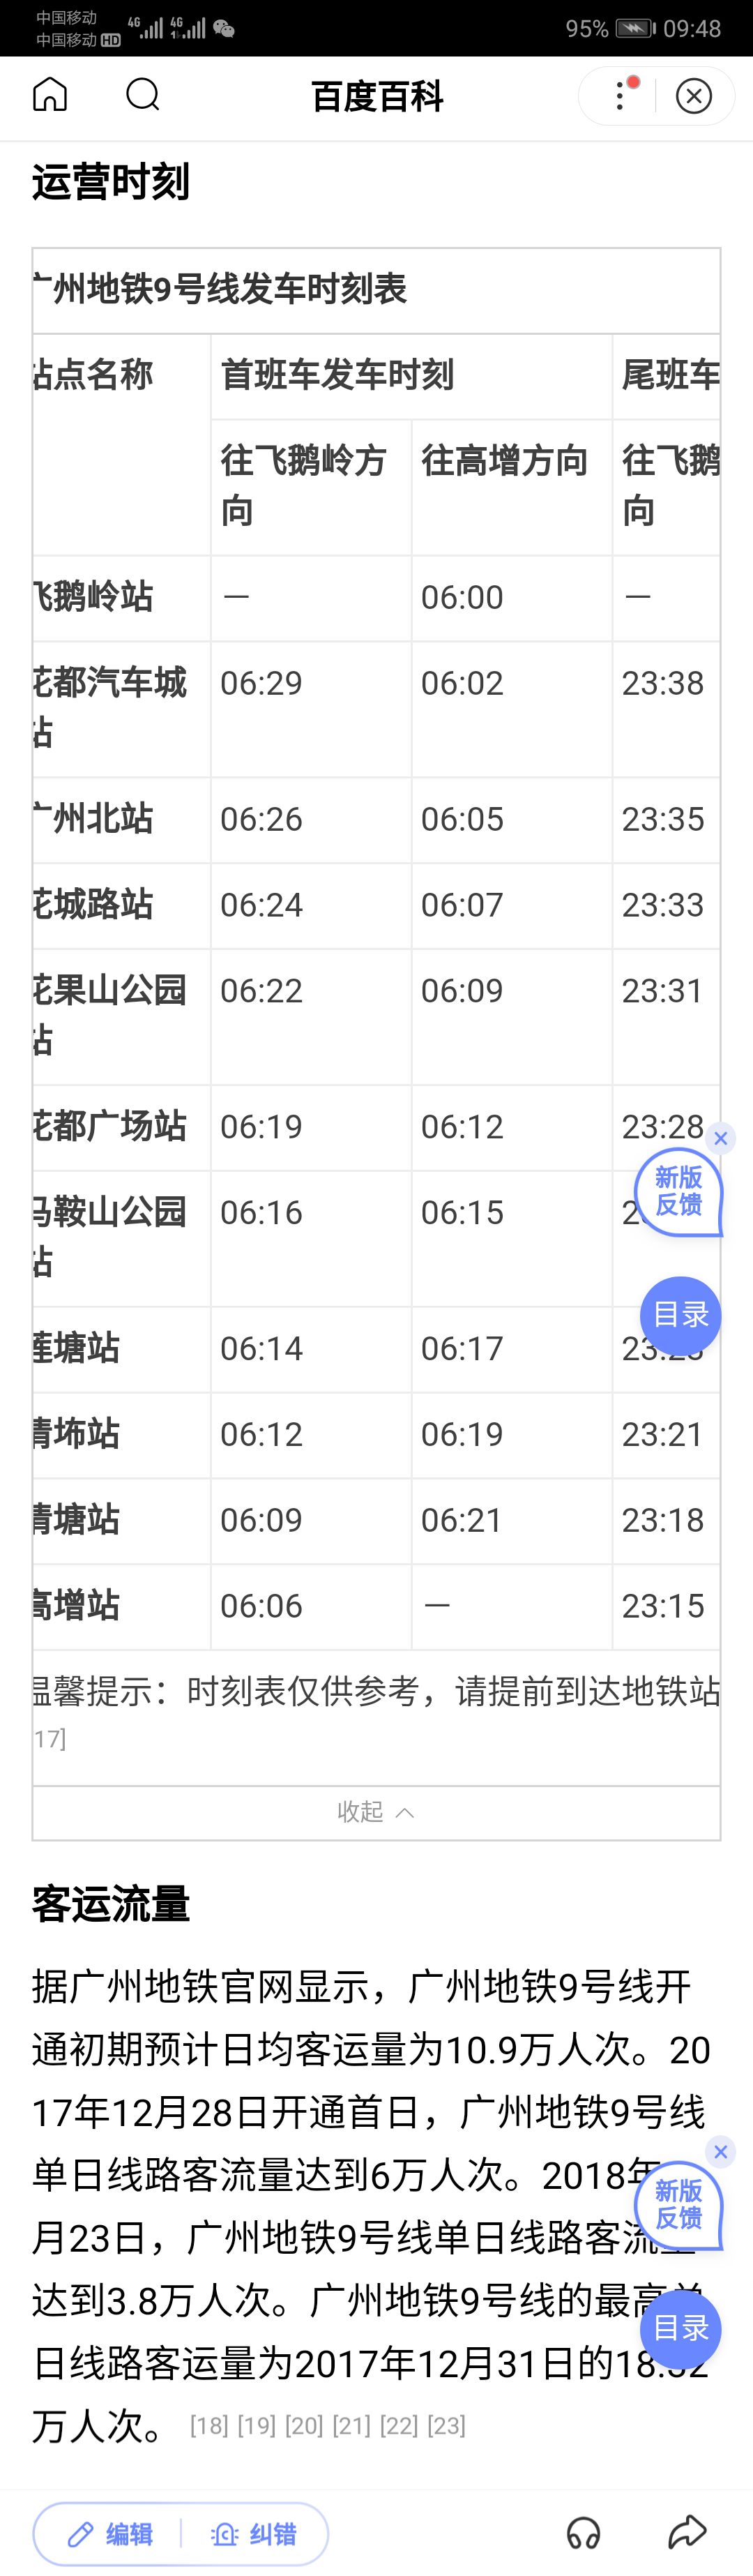 地铁站花都,广州市花都区有哪些地铁站